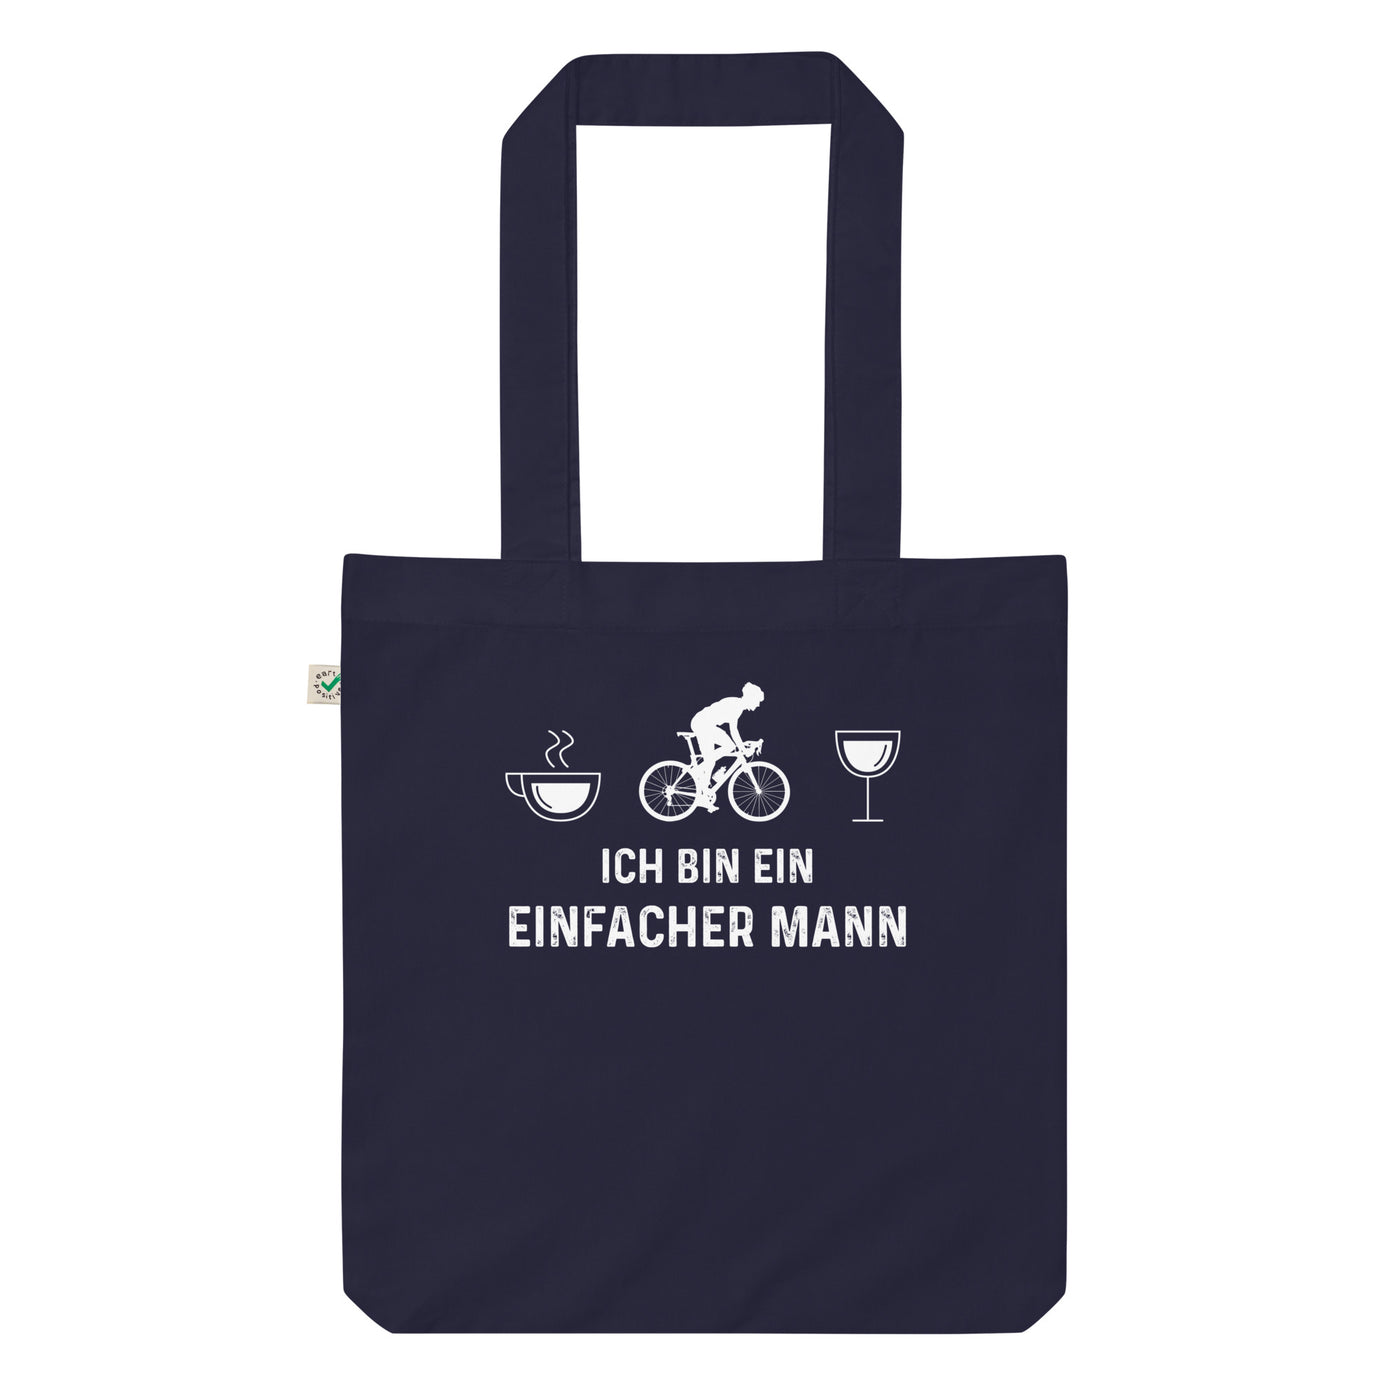 Ich Bin Ein Einfacher Mann 1 - Organic Einkaufstasche fahrrad Navy